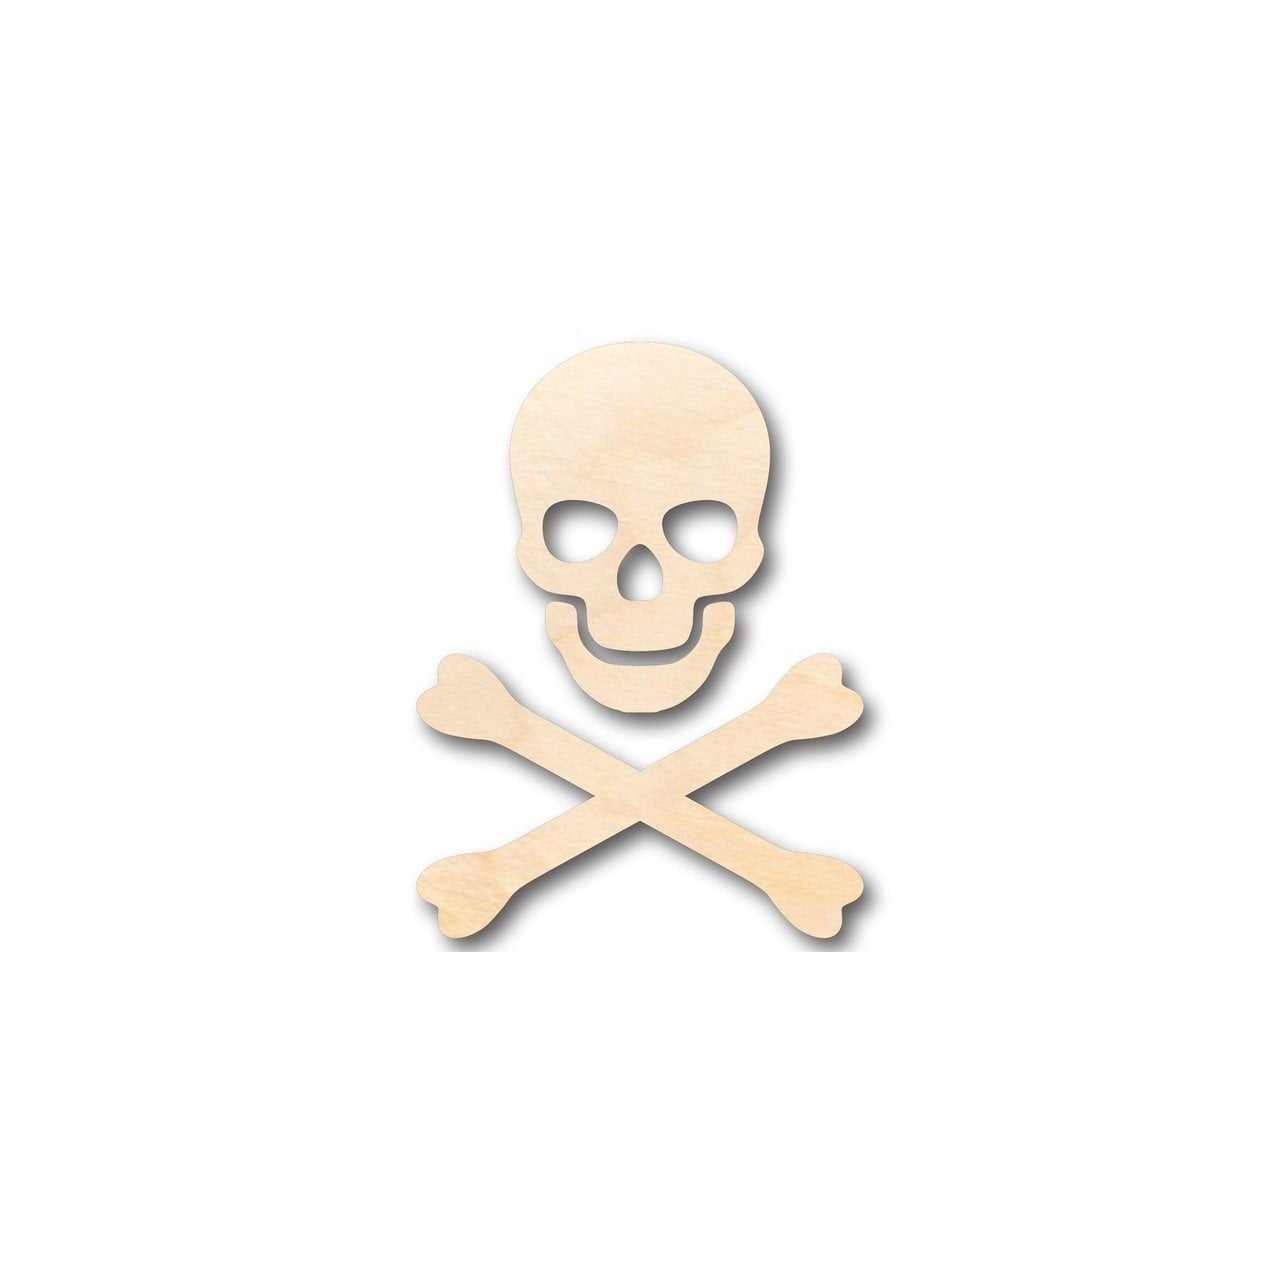 Wooden Pirate Ship Model Kit for KidsSkull & Crossbones Crafts 